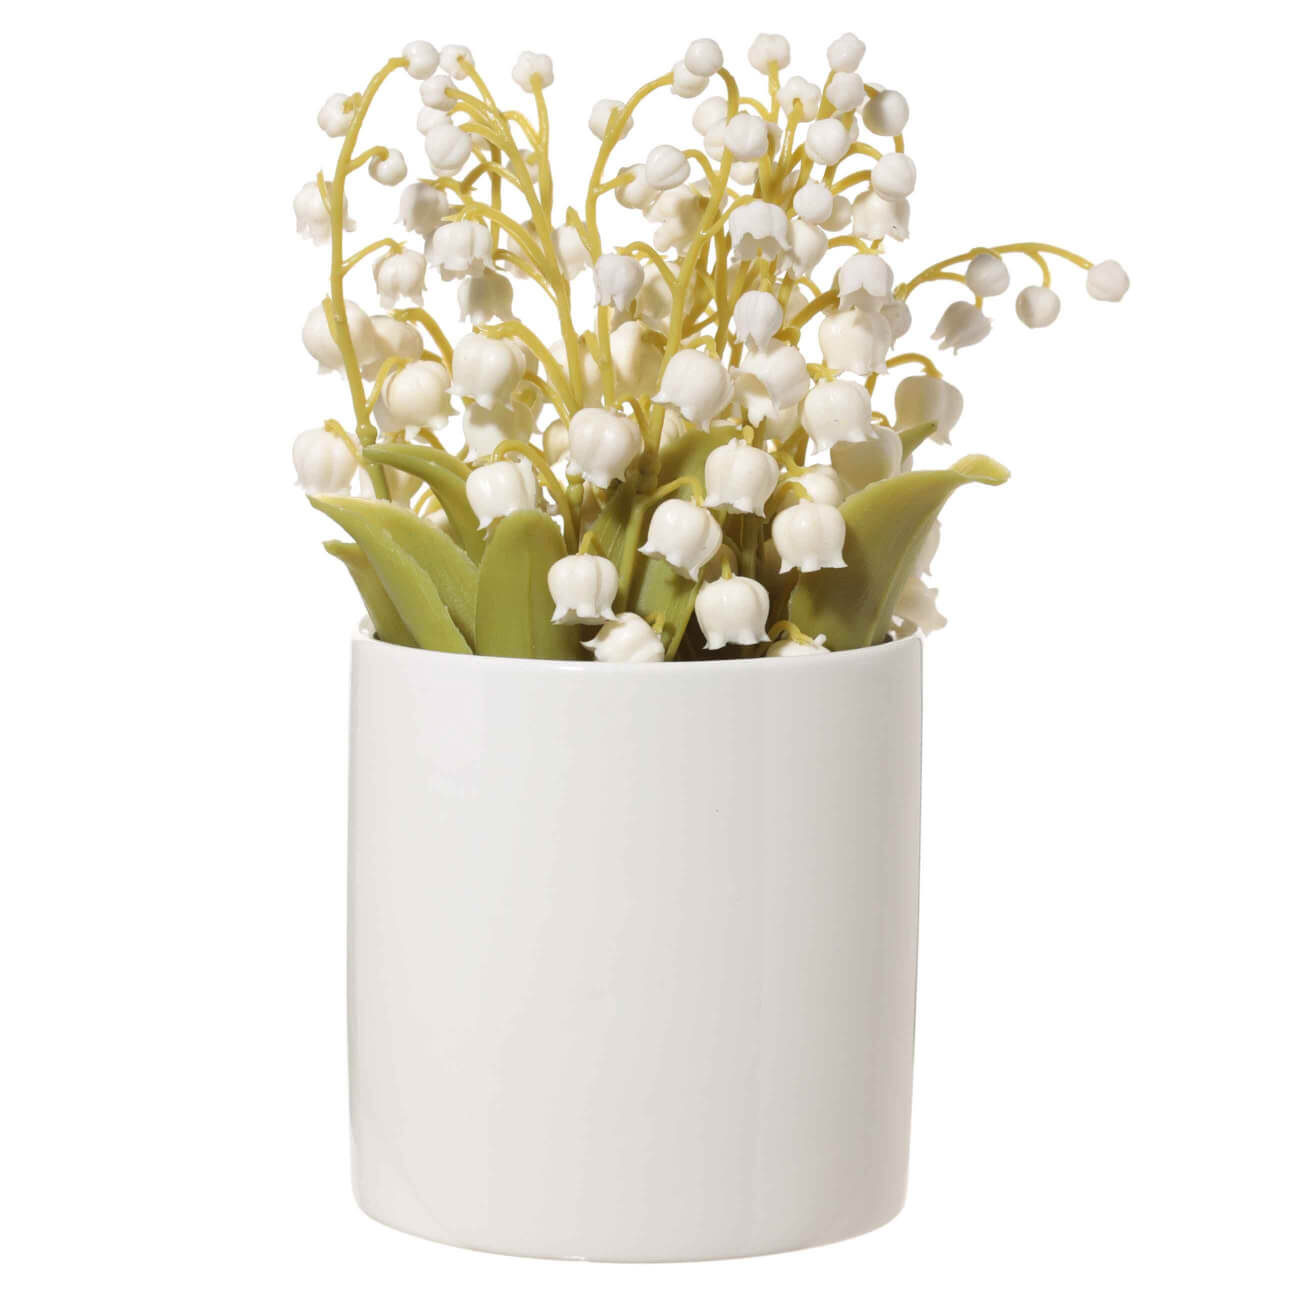 Растение искусственное, 16 см, в горшке, керамика/резина, Ландыши, May-lily растение искусственное тилландсия классик